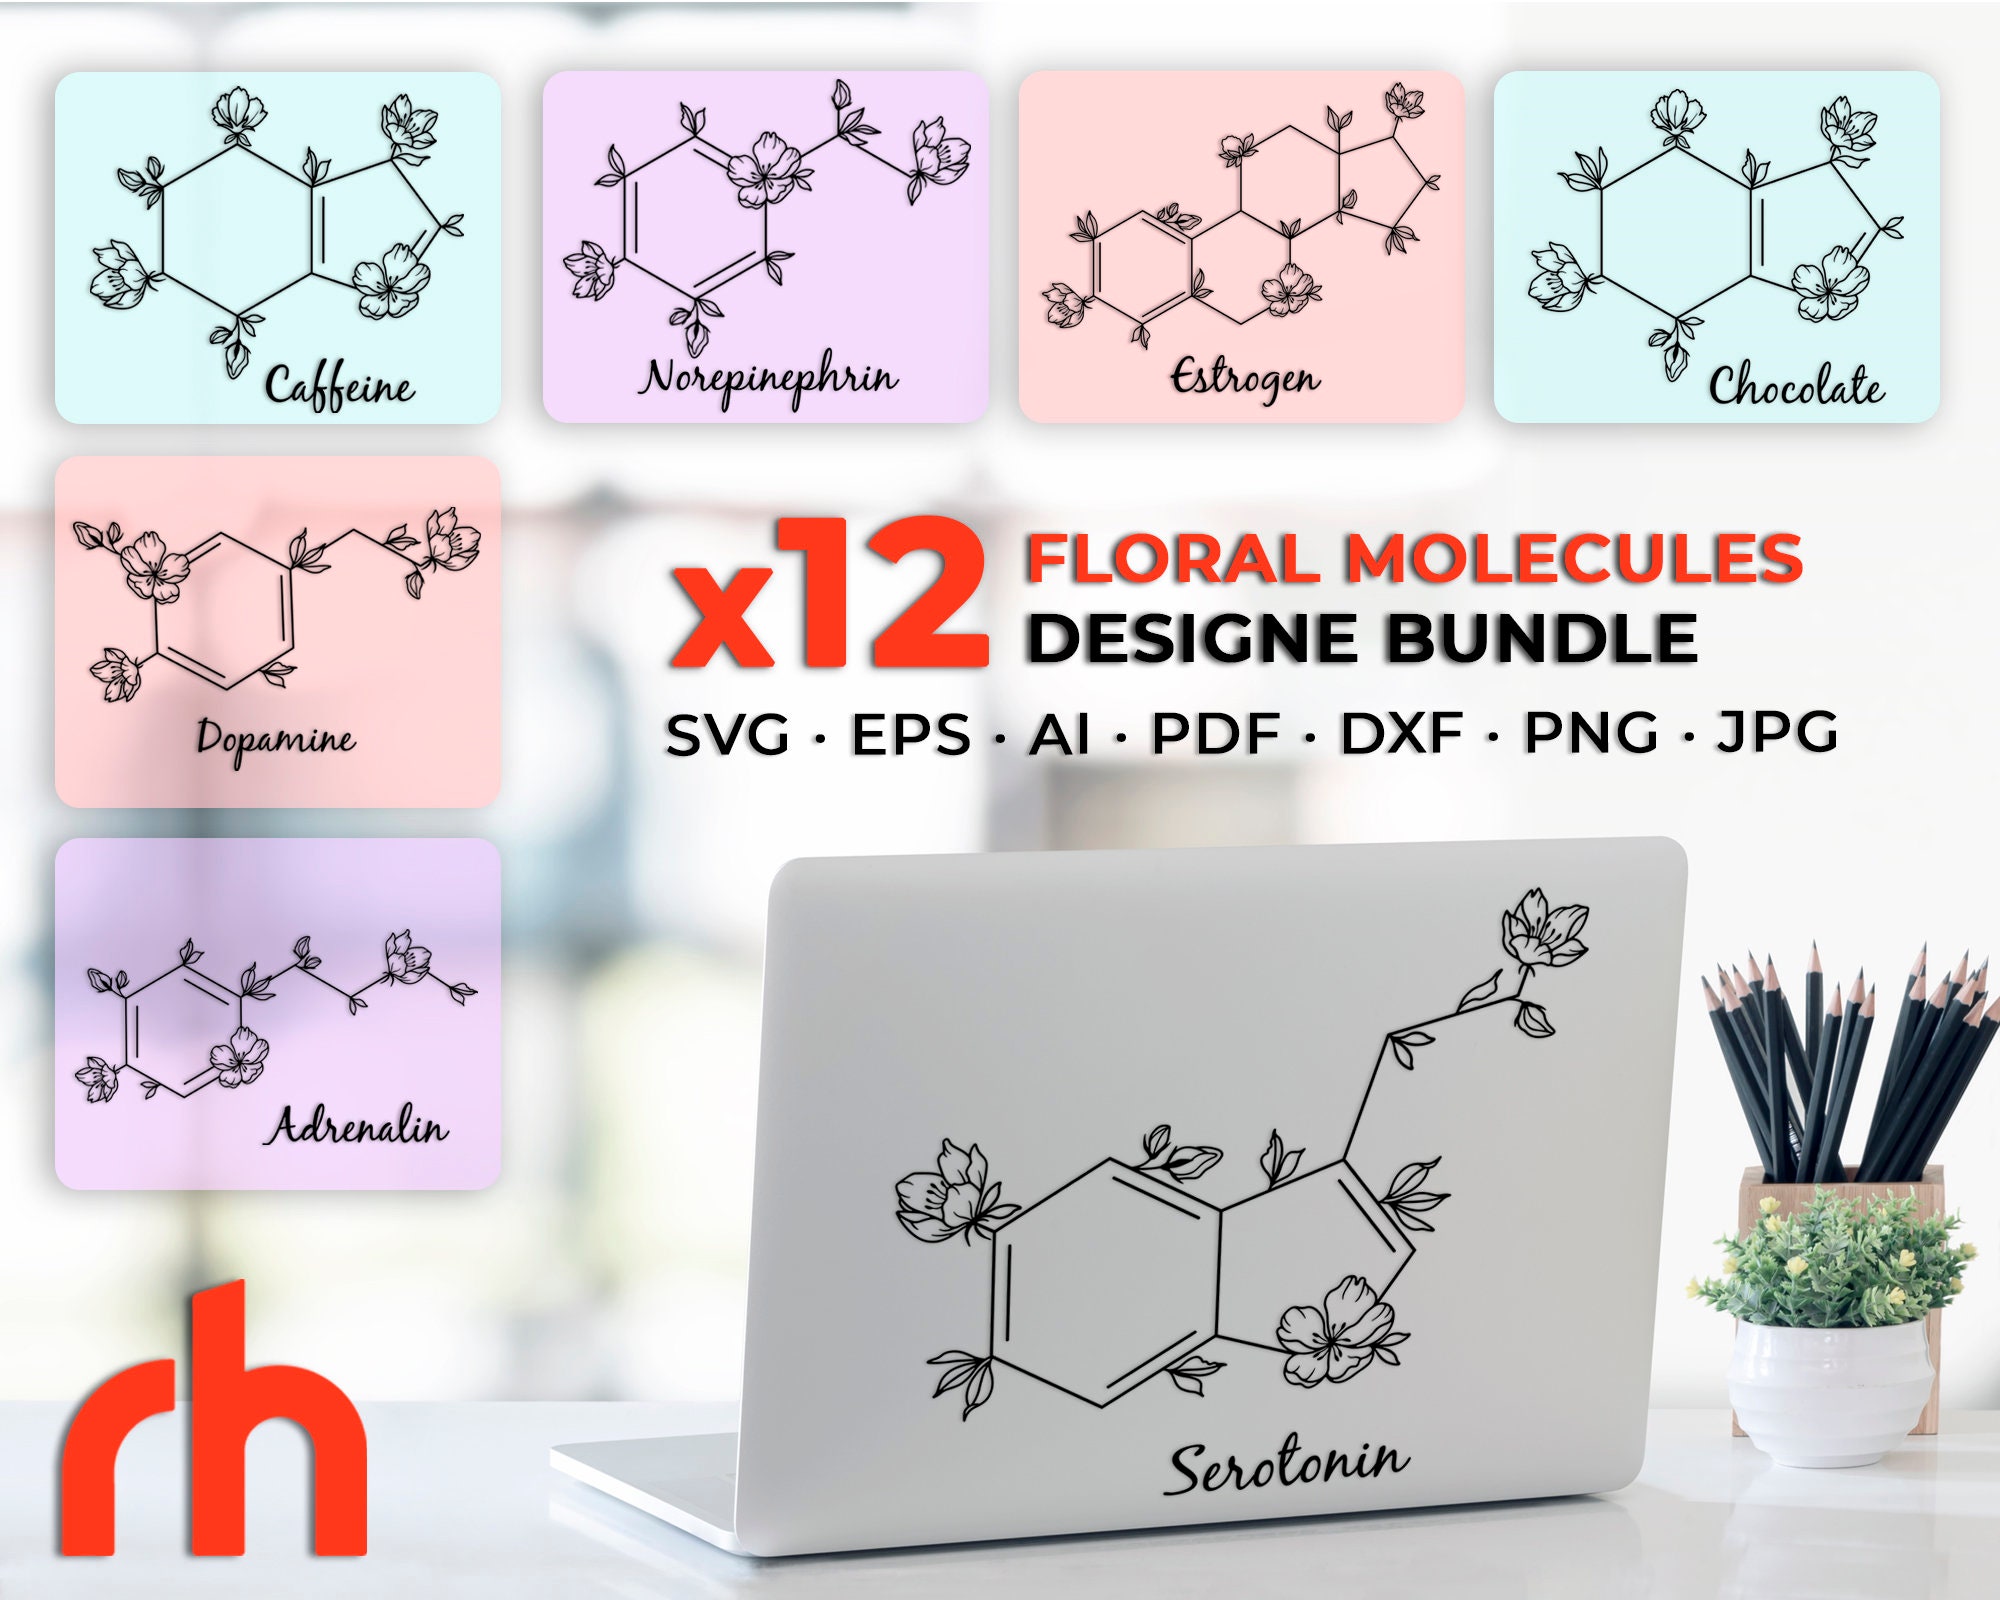 Brain Logo SVG - Floral Label Cut File - Flower Monogram DXF - So